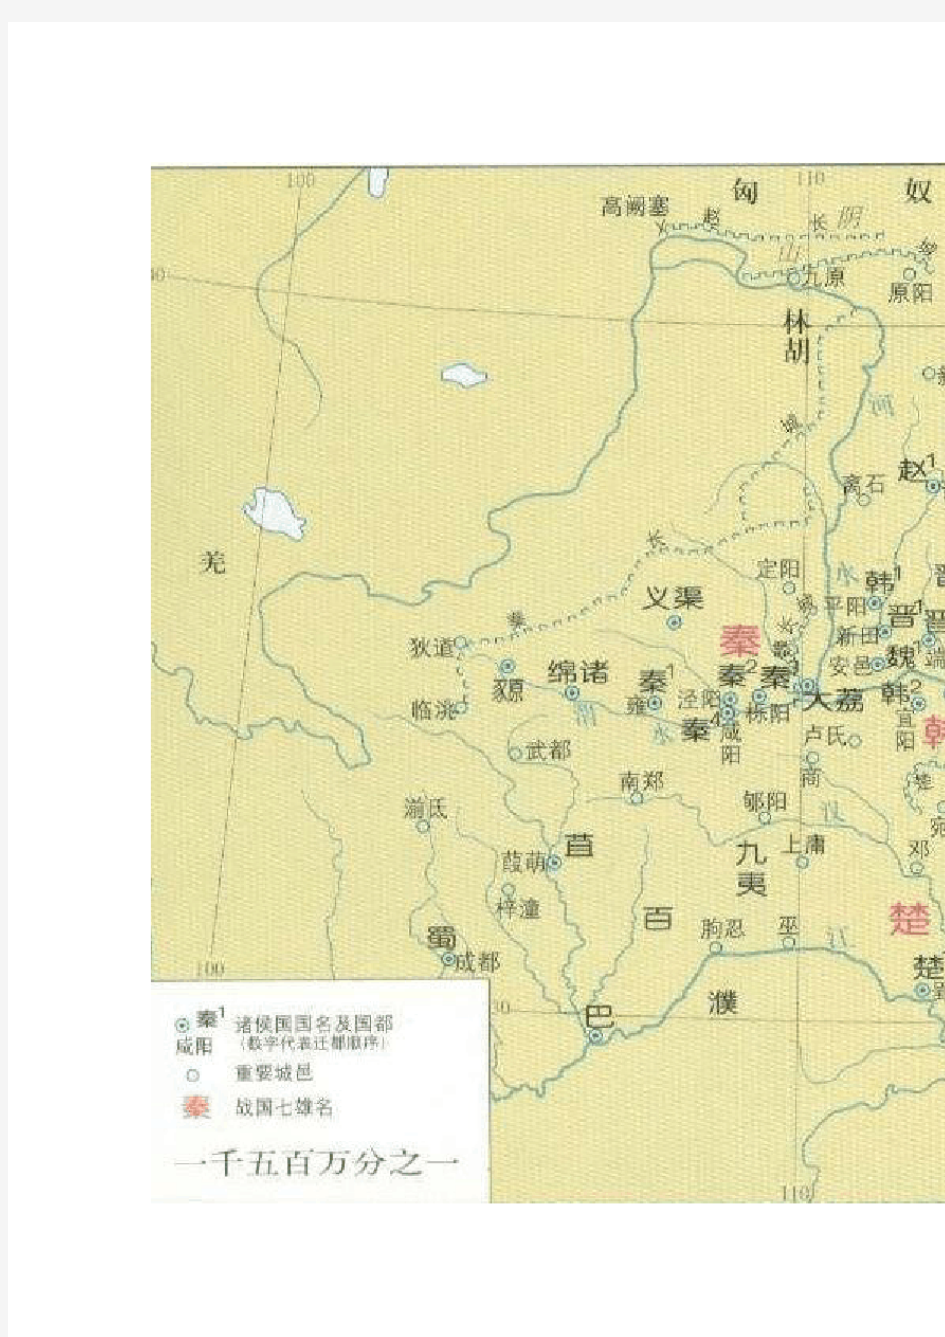 春秋战国详细地图(战国时期)